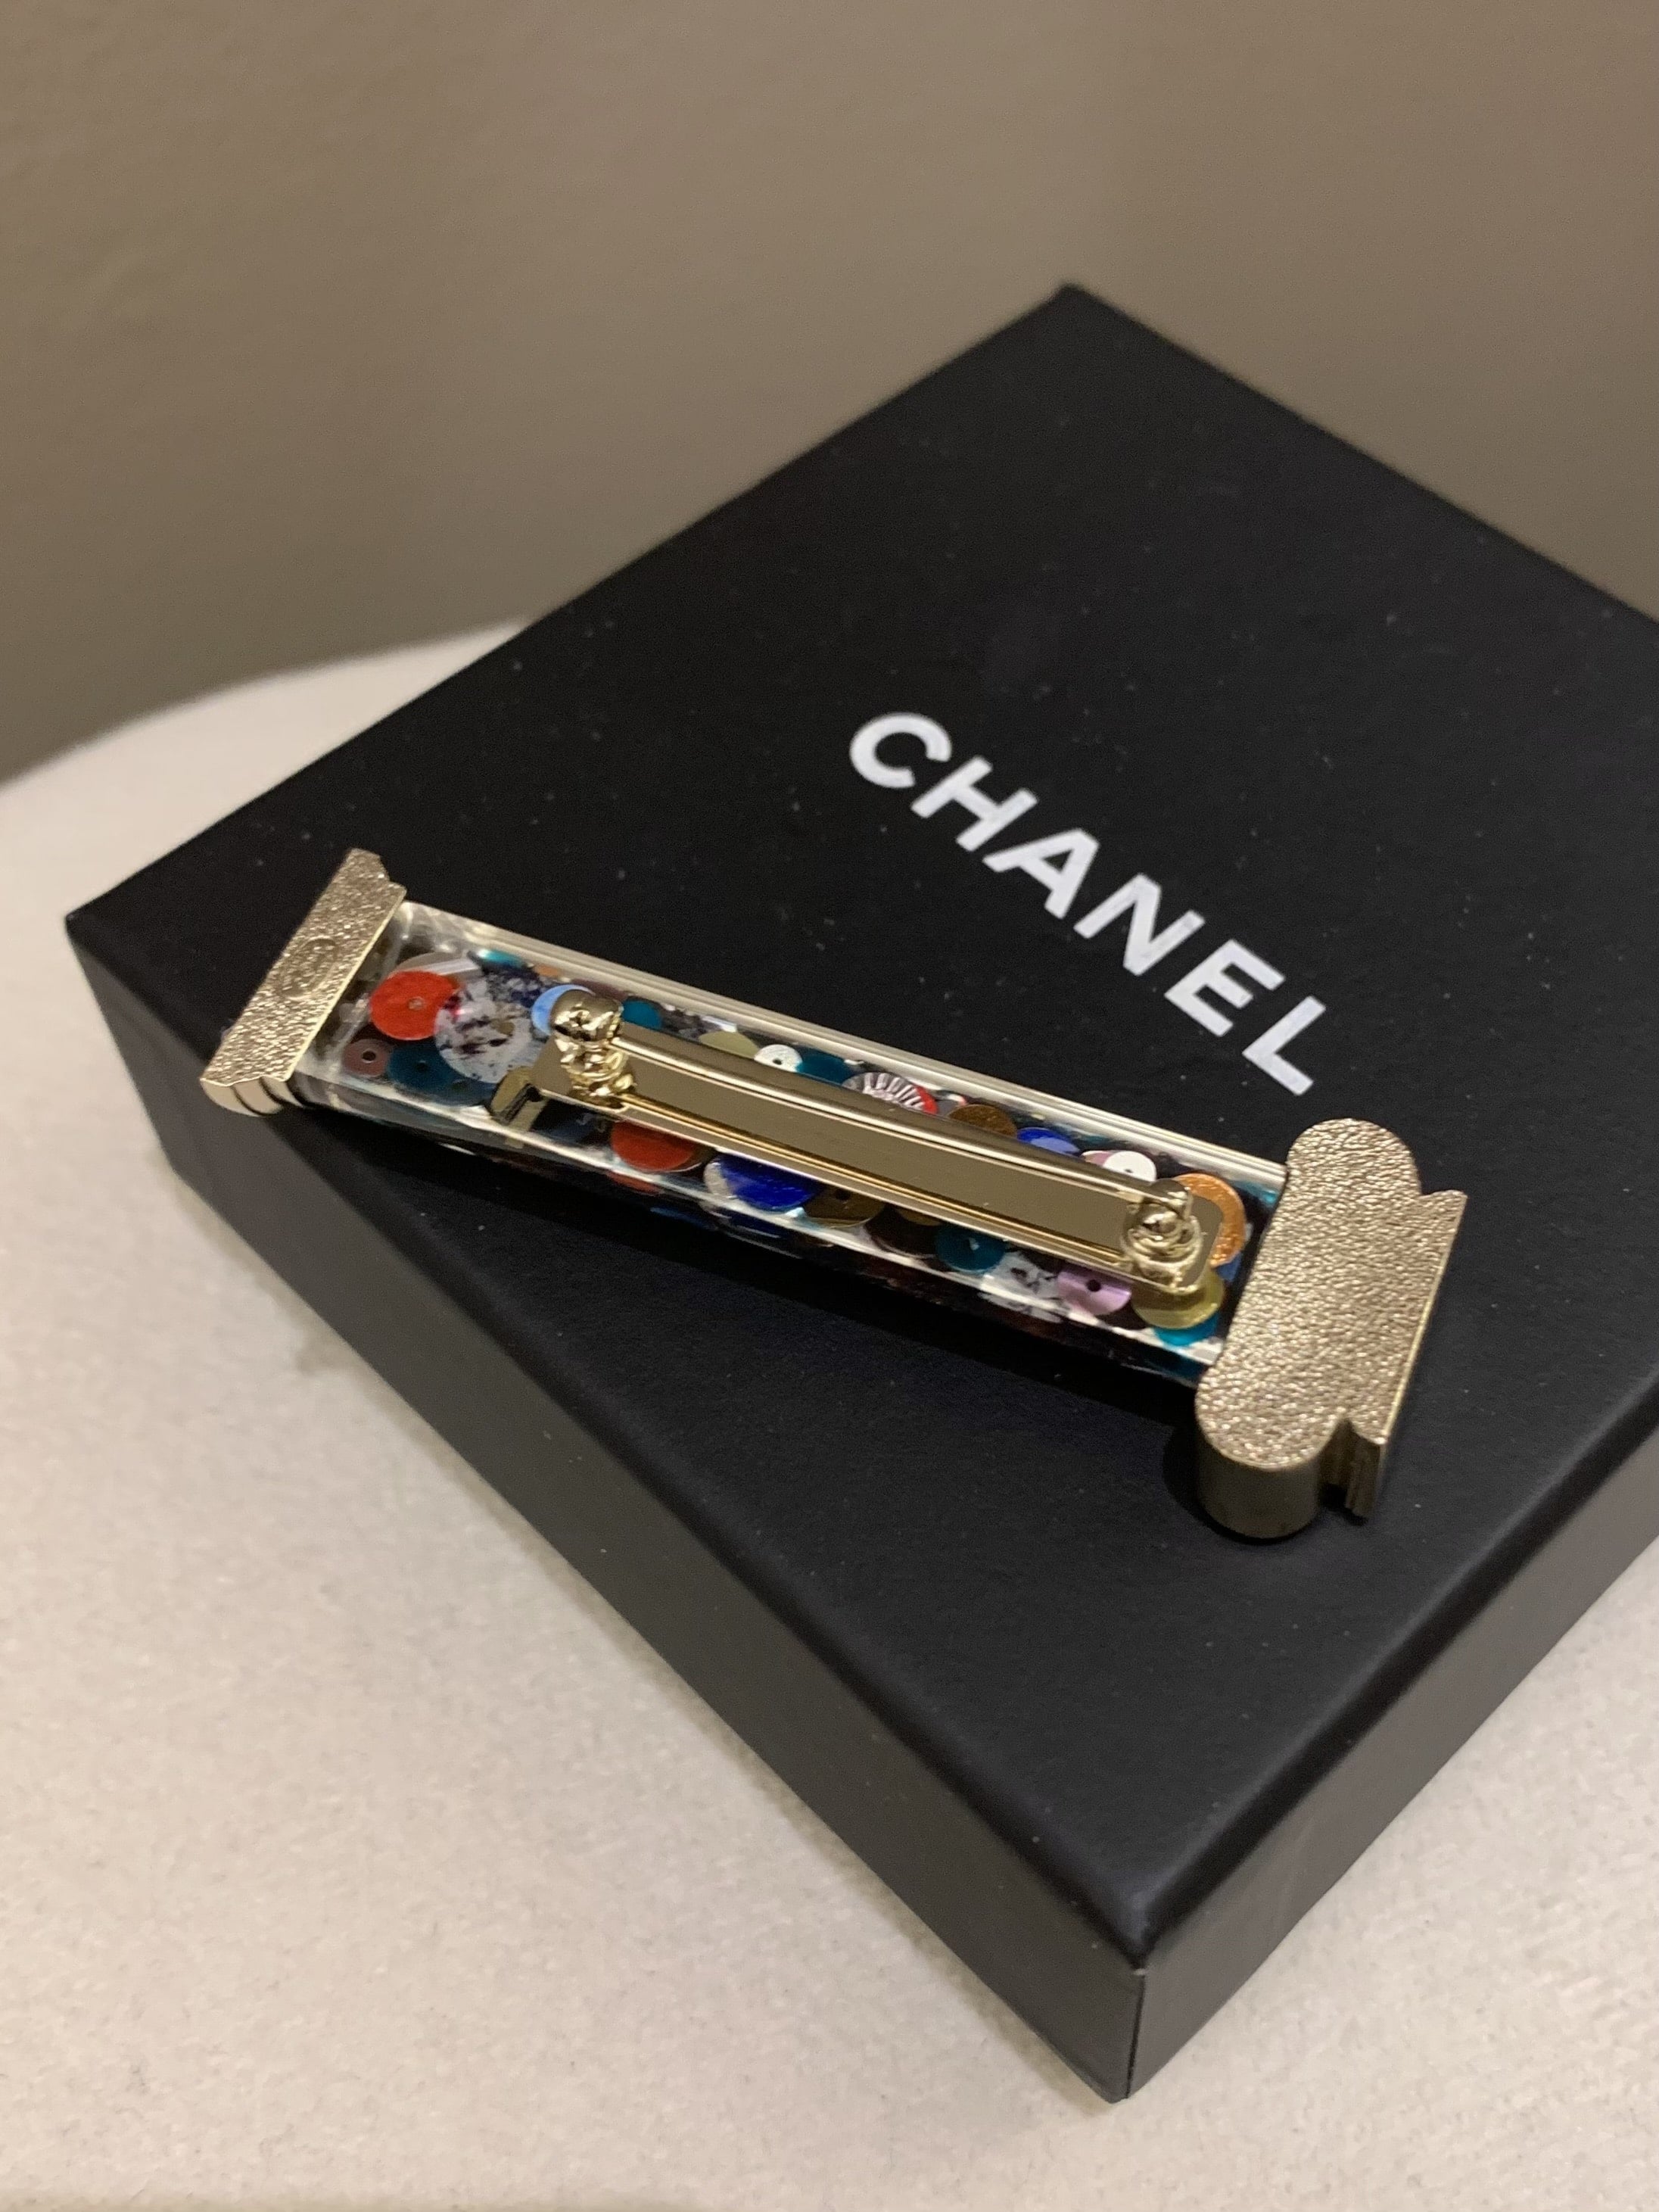 Chanel 18C Multi Color Brooch Multi Color Champagne